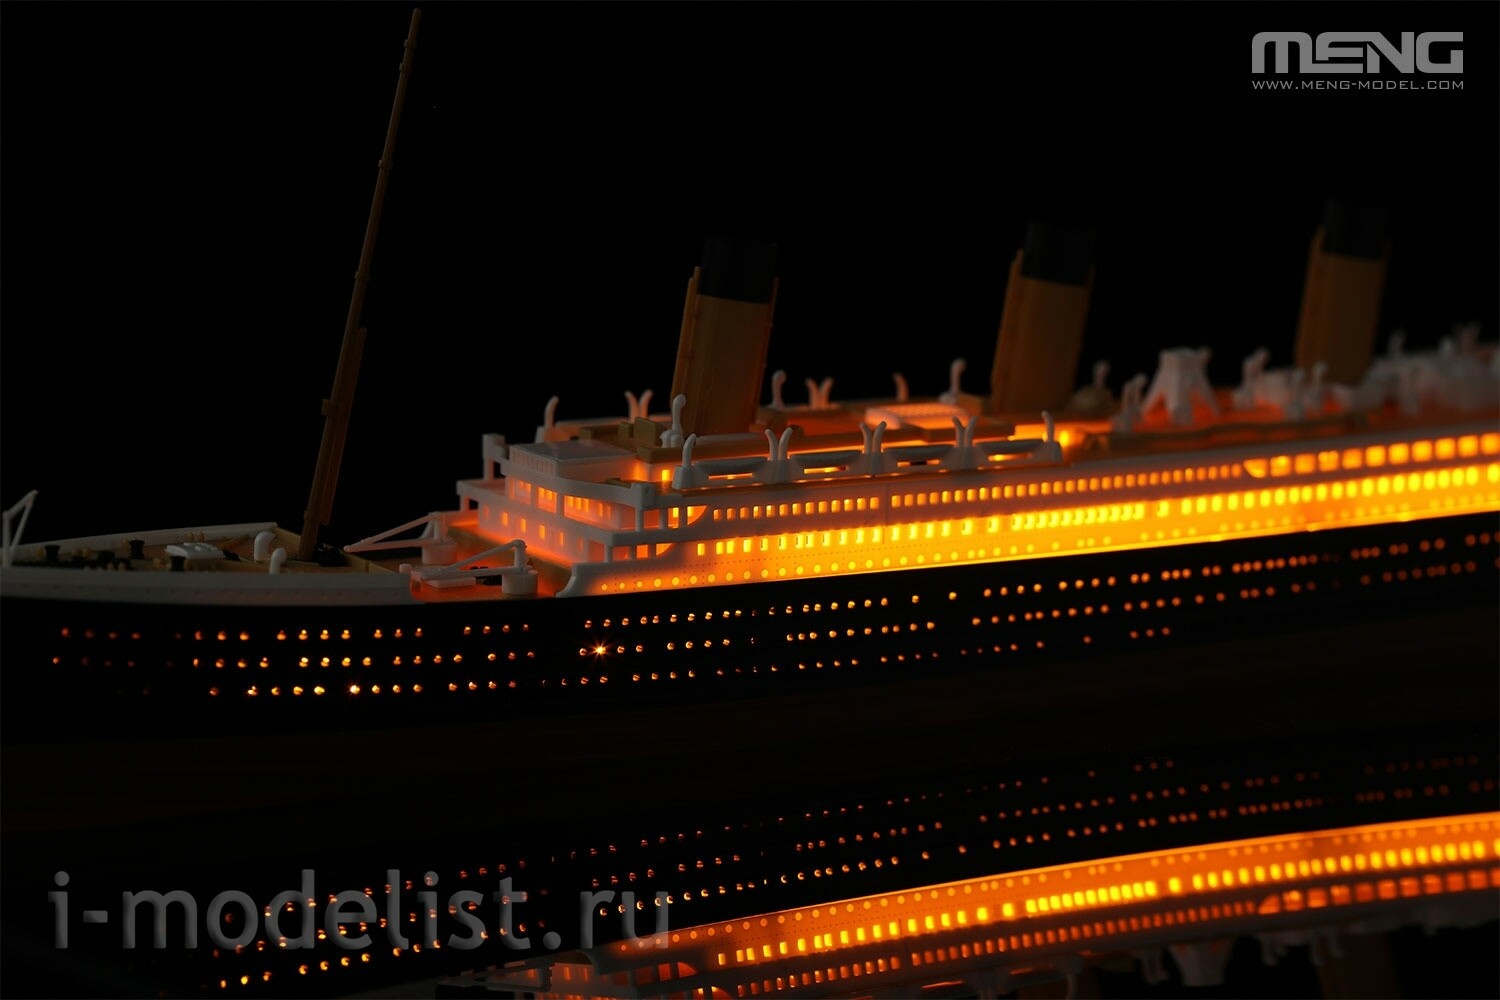 PS-008 Meng 1/700 R.M.S. Titanic